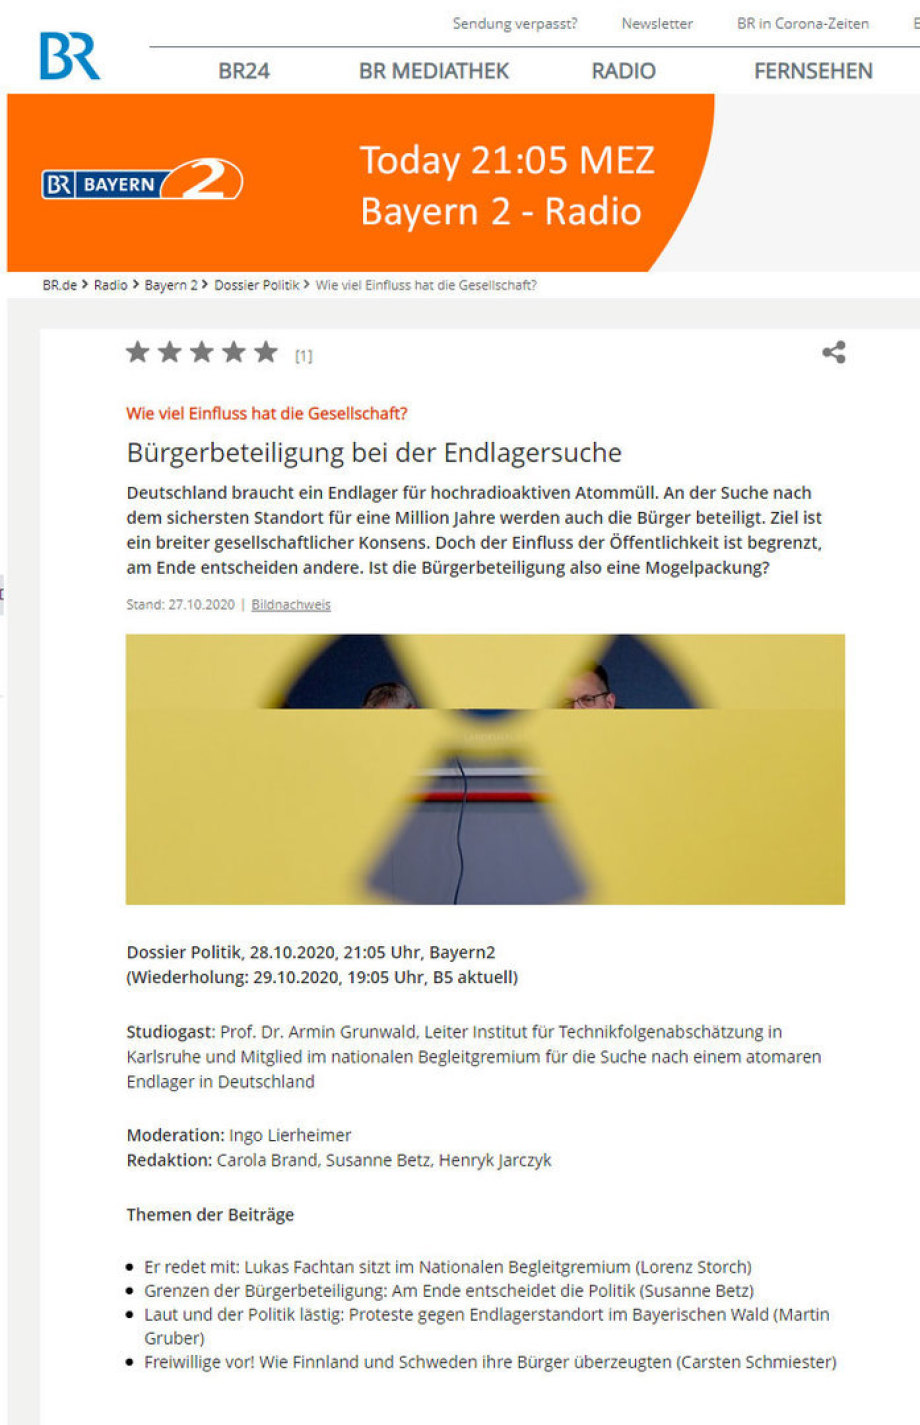 https://www.br.de/radio/bayern2/sendungen/dossier-politik/buergerbeteiligung-endlagersuche-100.html